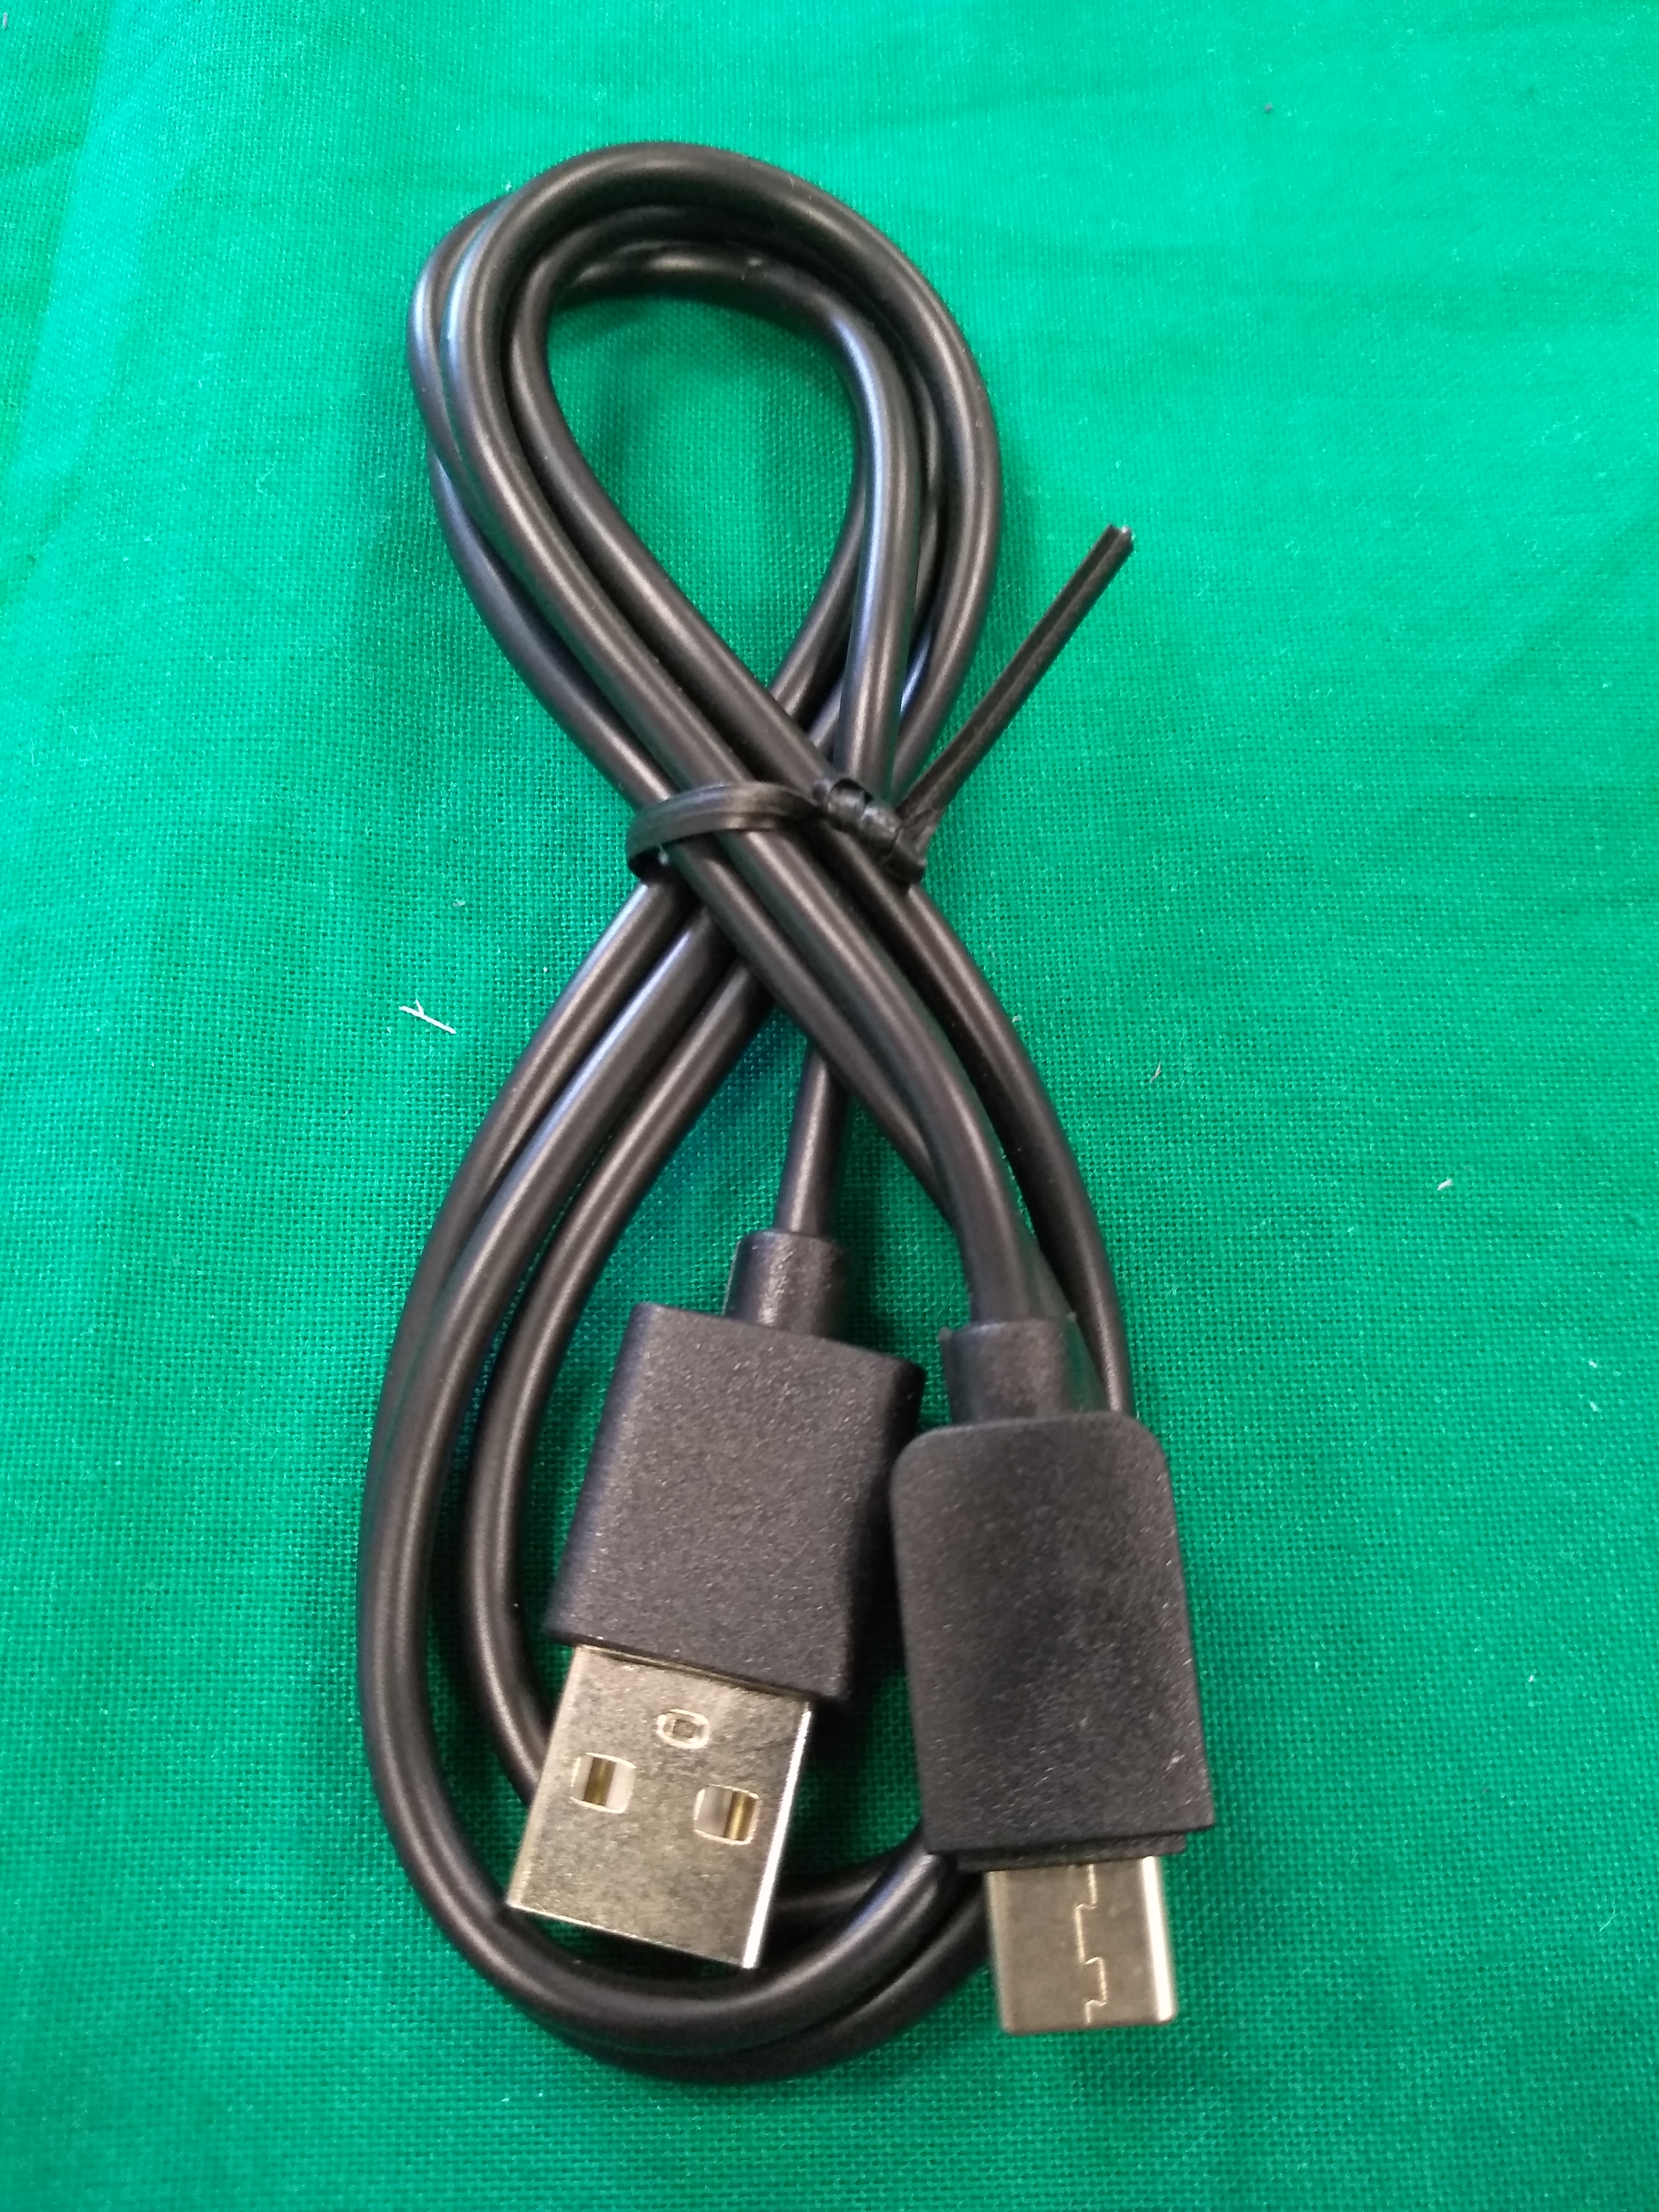 USB C 1 méteres kábel, kiemelt kép